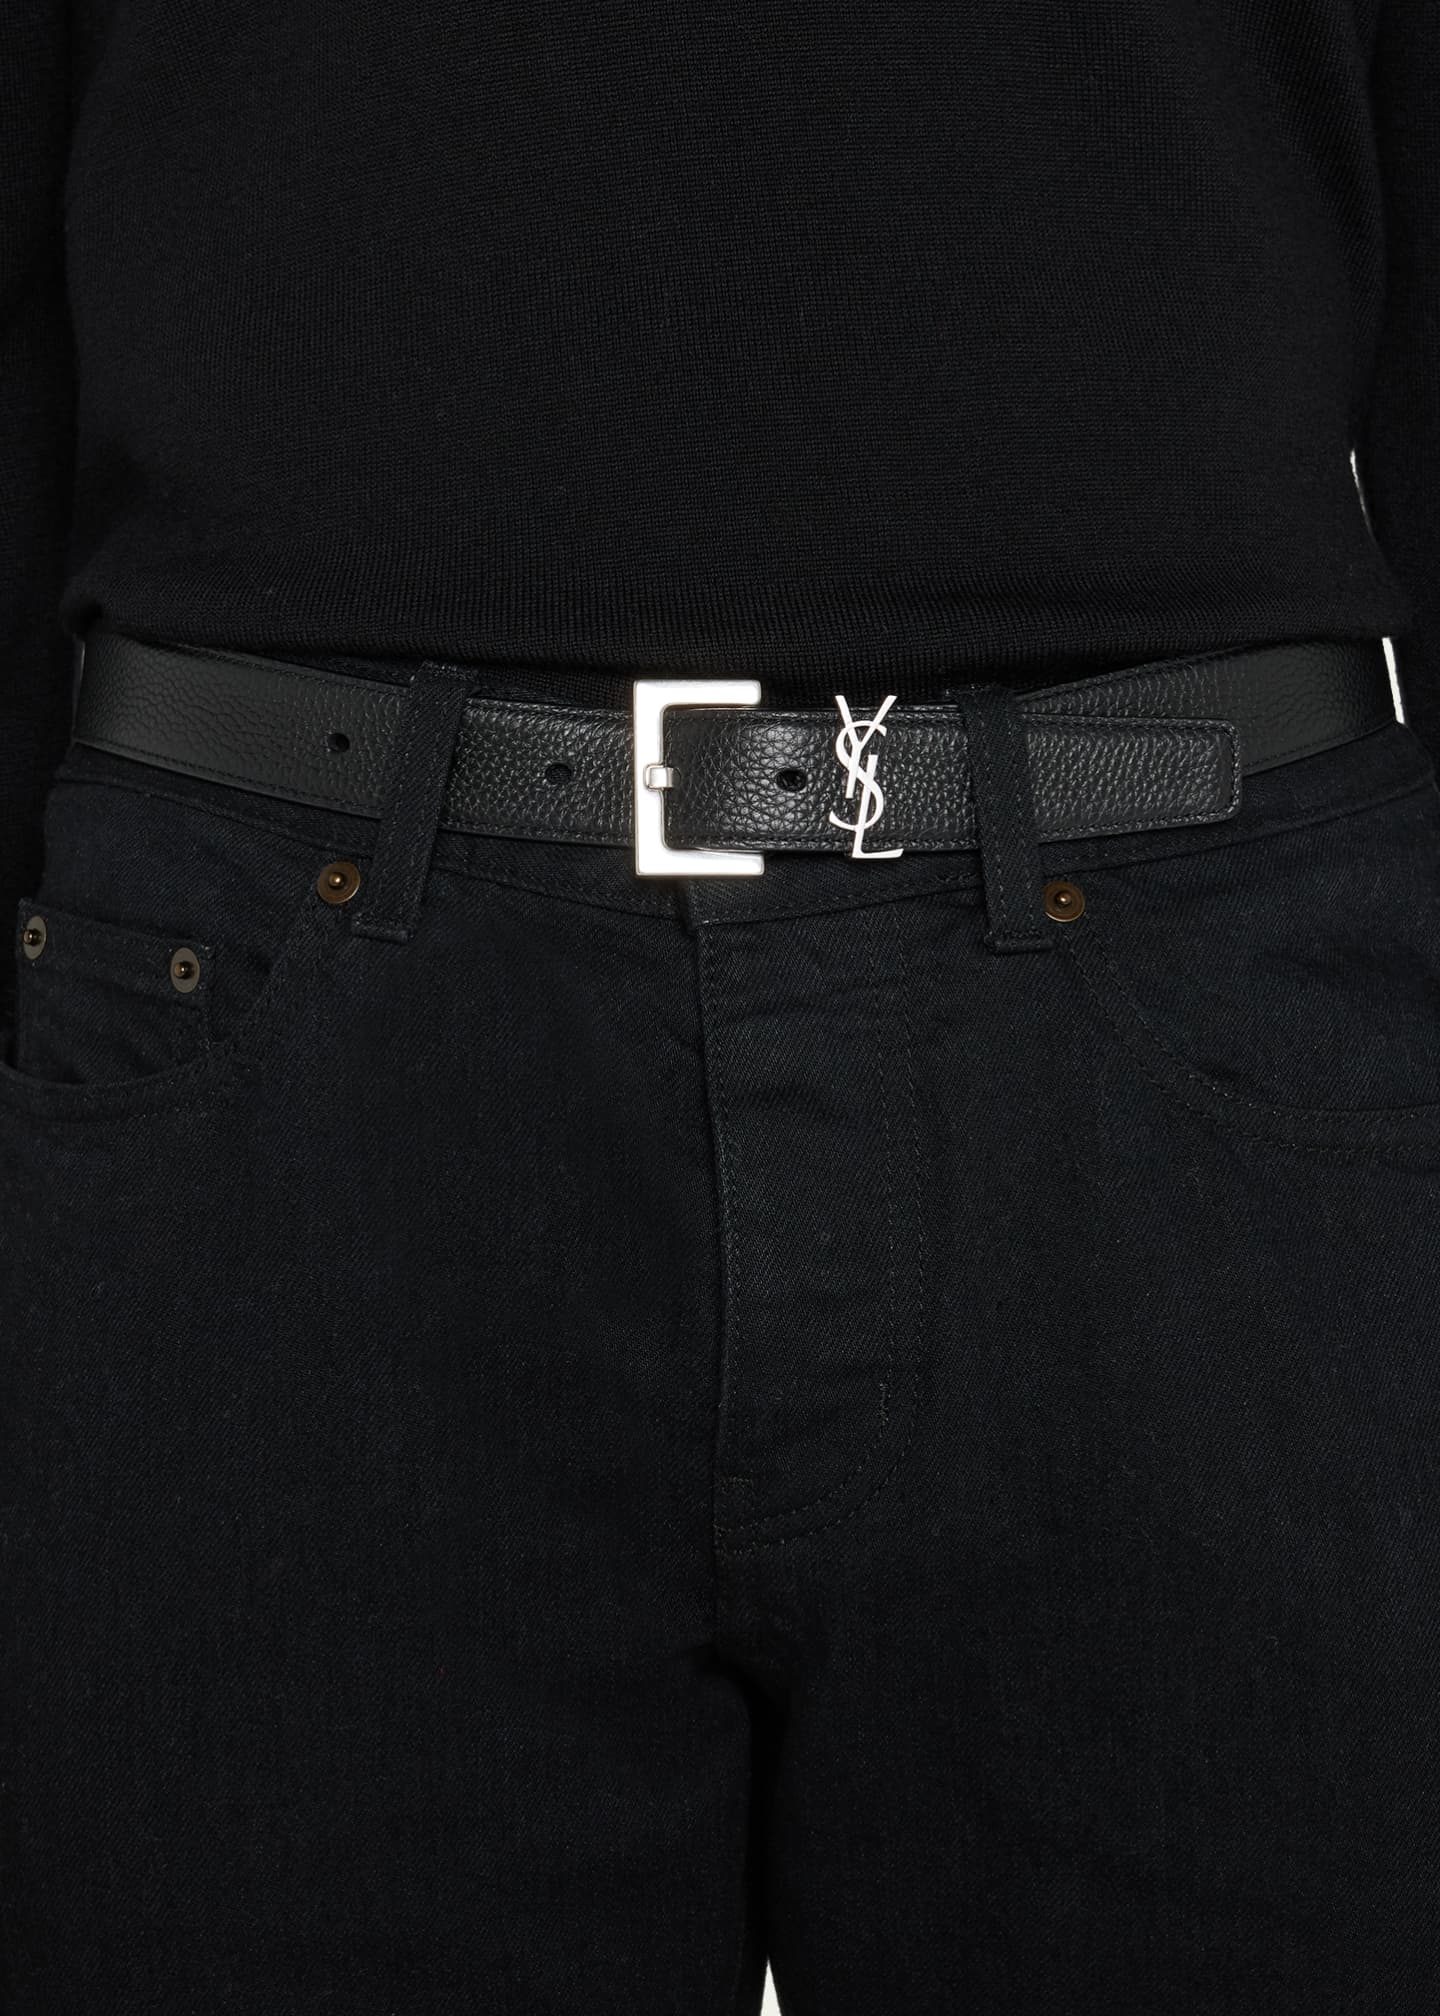 YSL Yves Saint Laurent Belts for Men